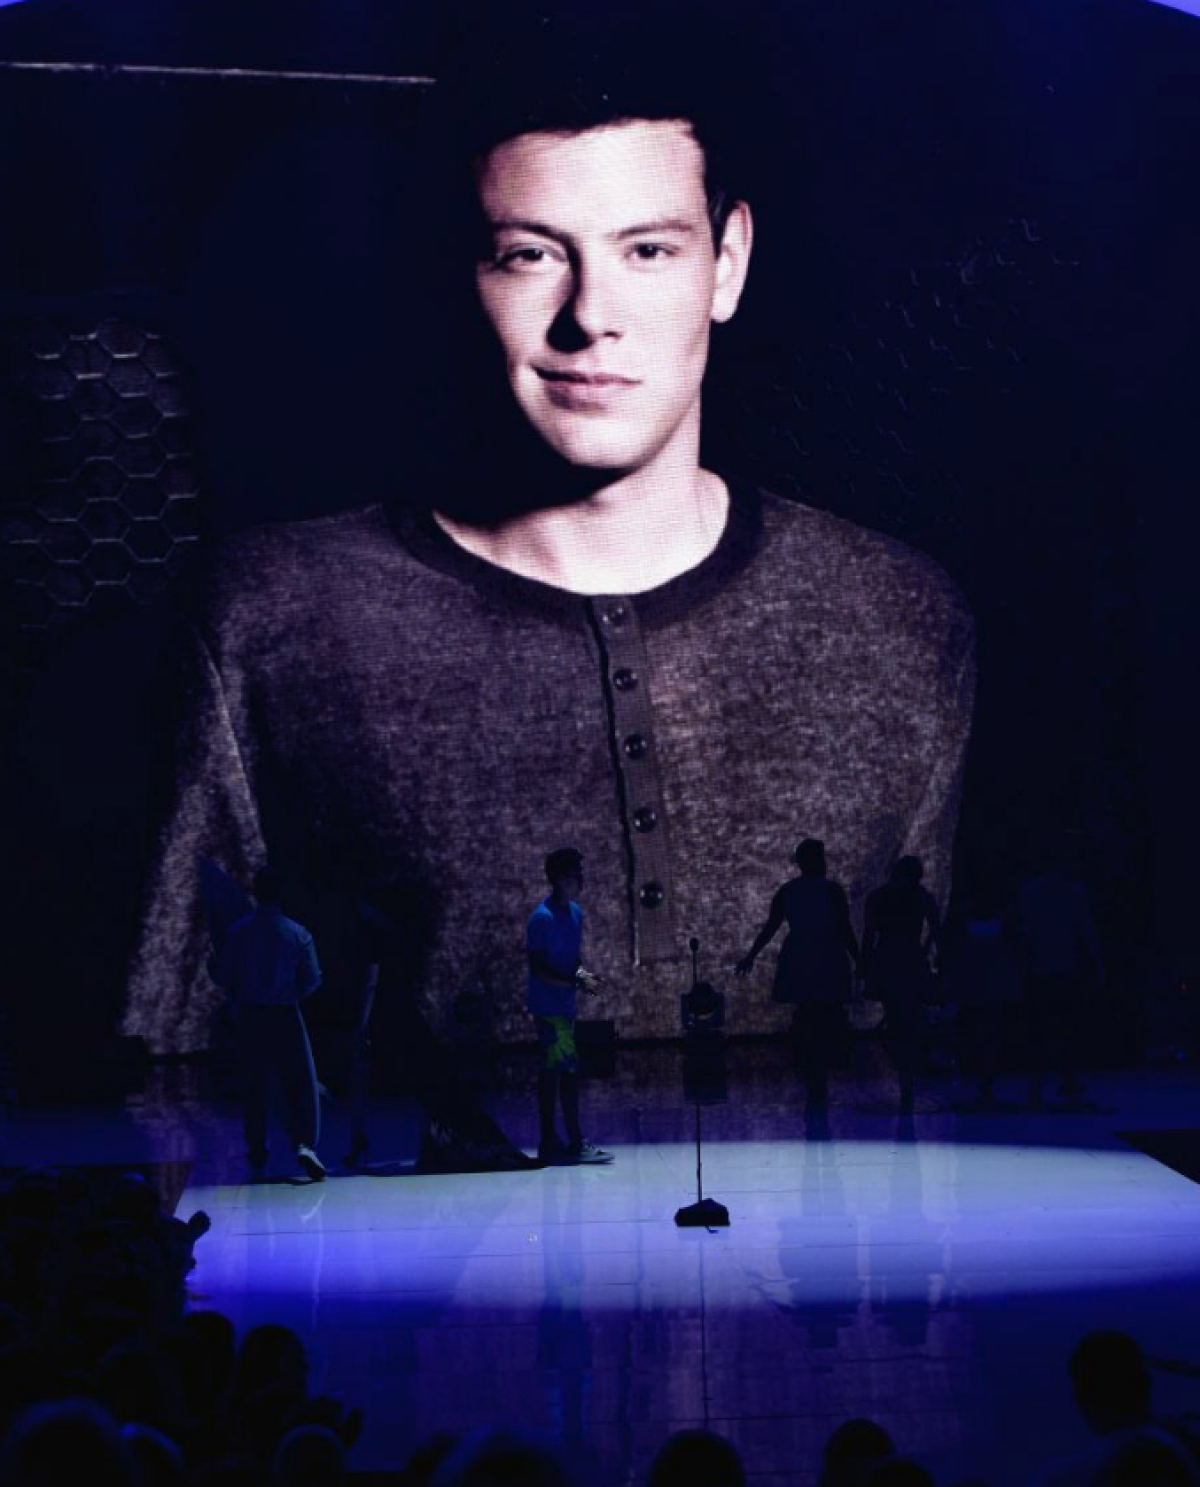 Corey se suicidó a los 31 años, su muerte fue el primero de muchos escándalos que han ensombrecido a la serie Glee. Foto: AFP